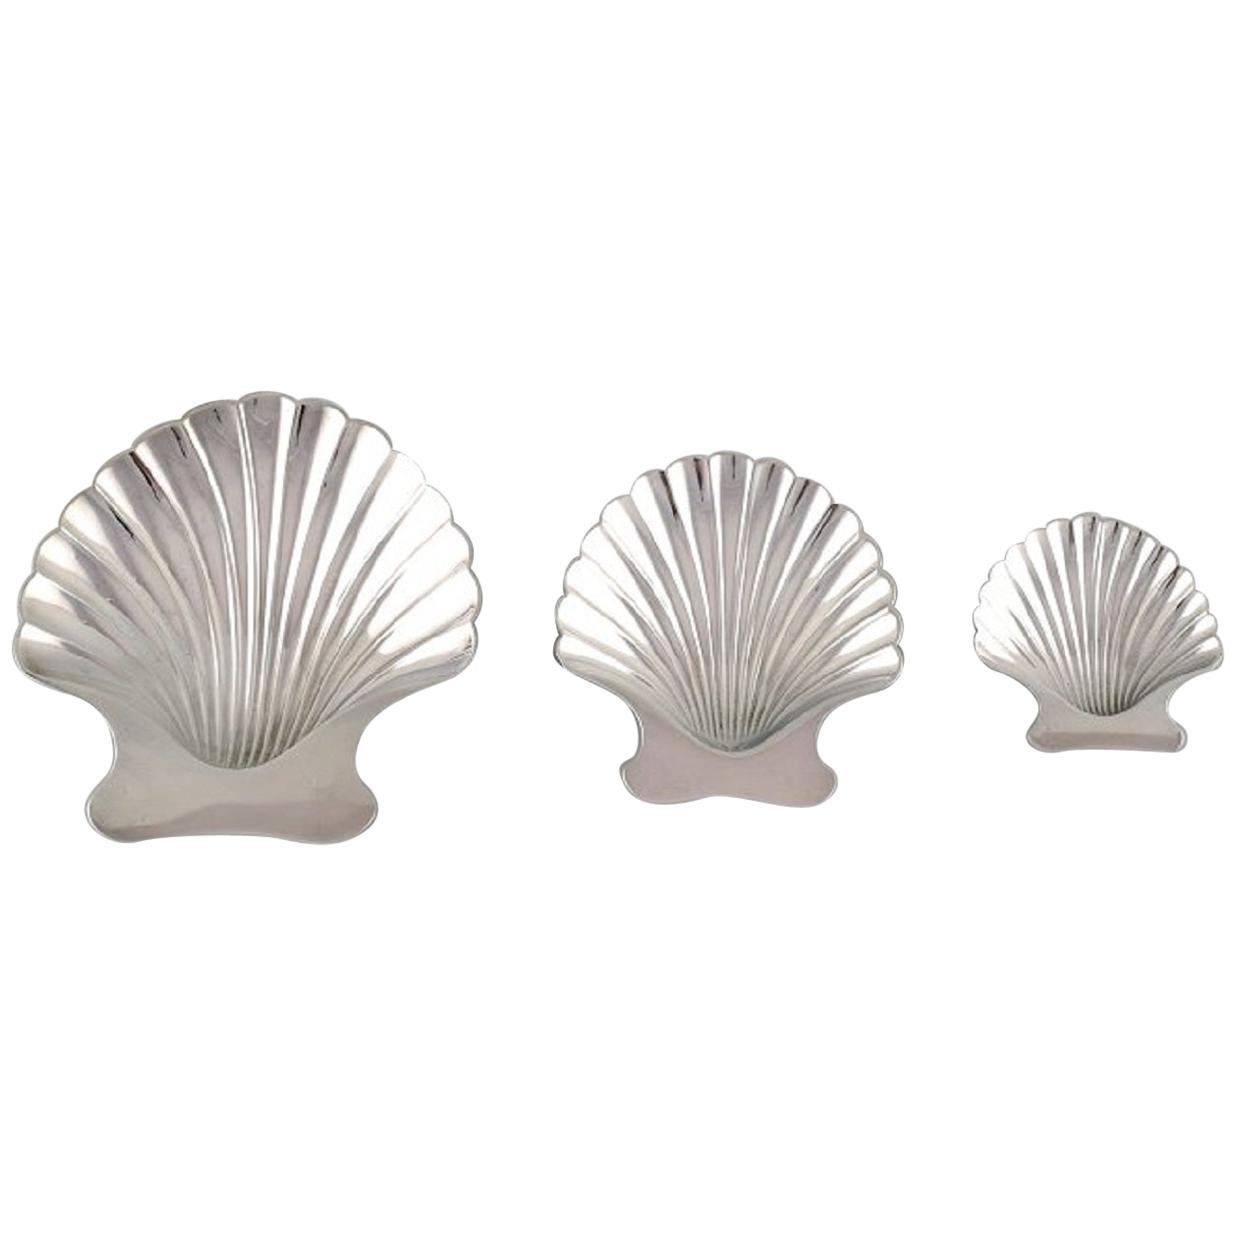 Tiffany & Co. 'New York', Three Silver Bowls on Feet Shaped as Seashells